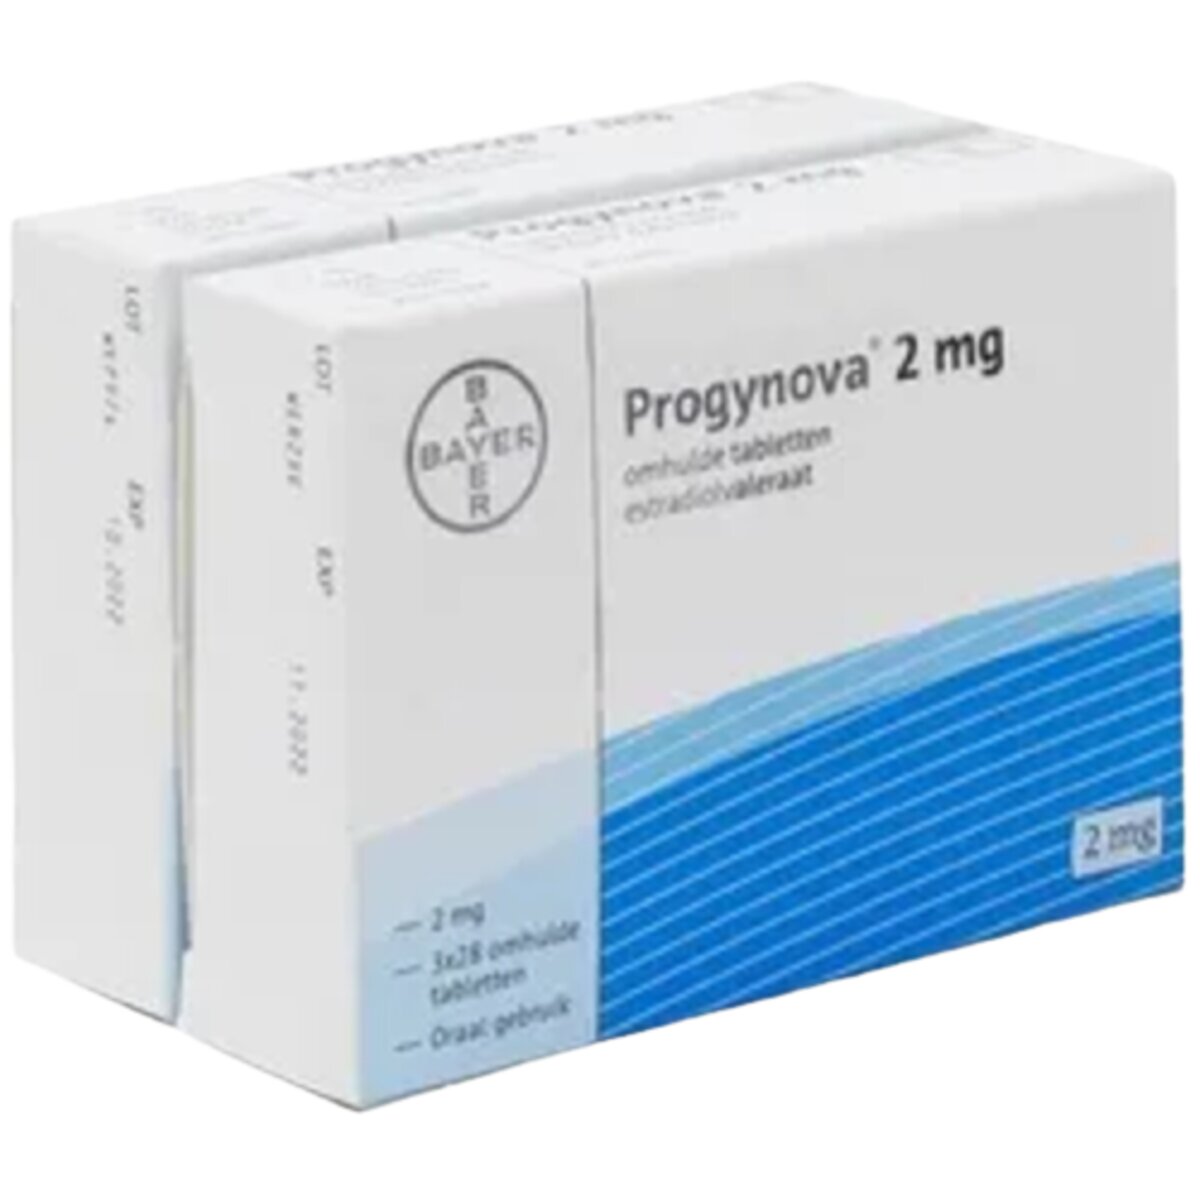 Buy Progynova 2mg Tablets - Estradiol Valerate, 84's - Dock Pharmacy